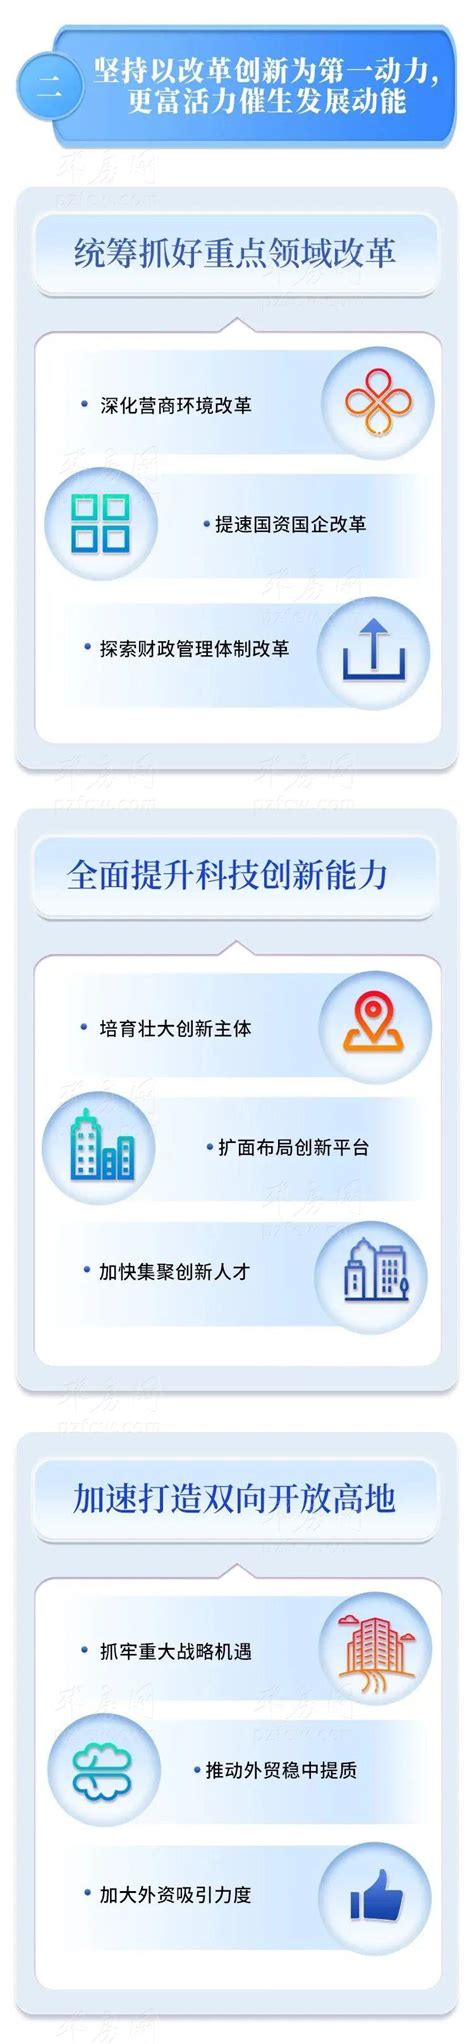 邳州新苏中心智能化安装工程-商业楼宇-江苏海之达智能化系统有限公司